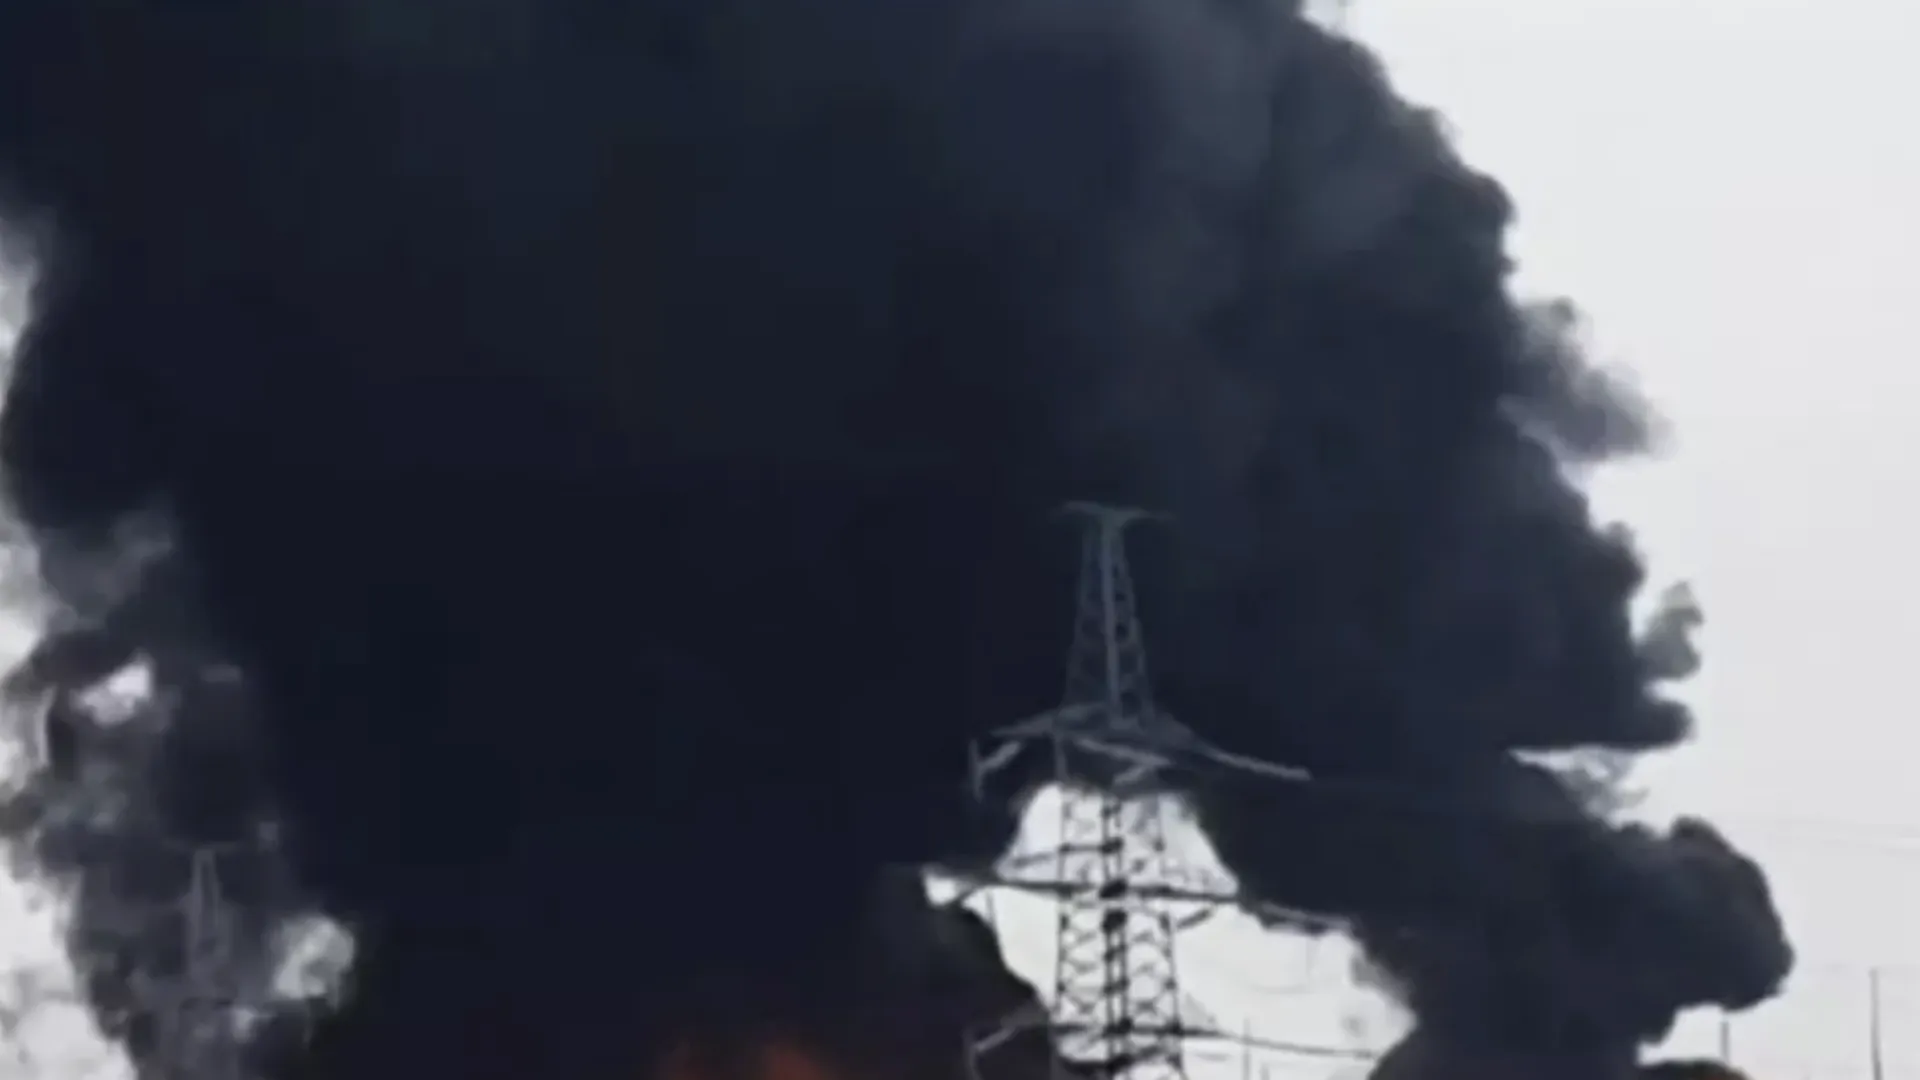 Взрывы раздались в Кривом Роге на Украине